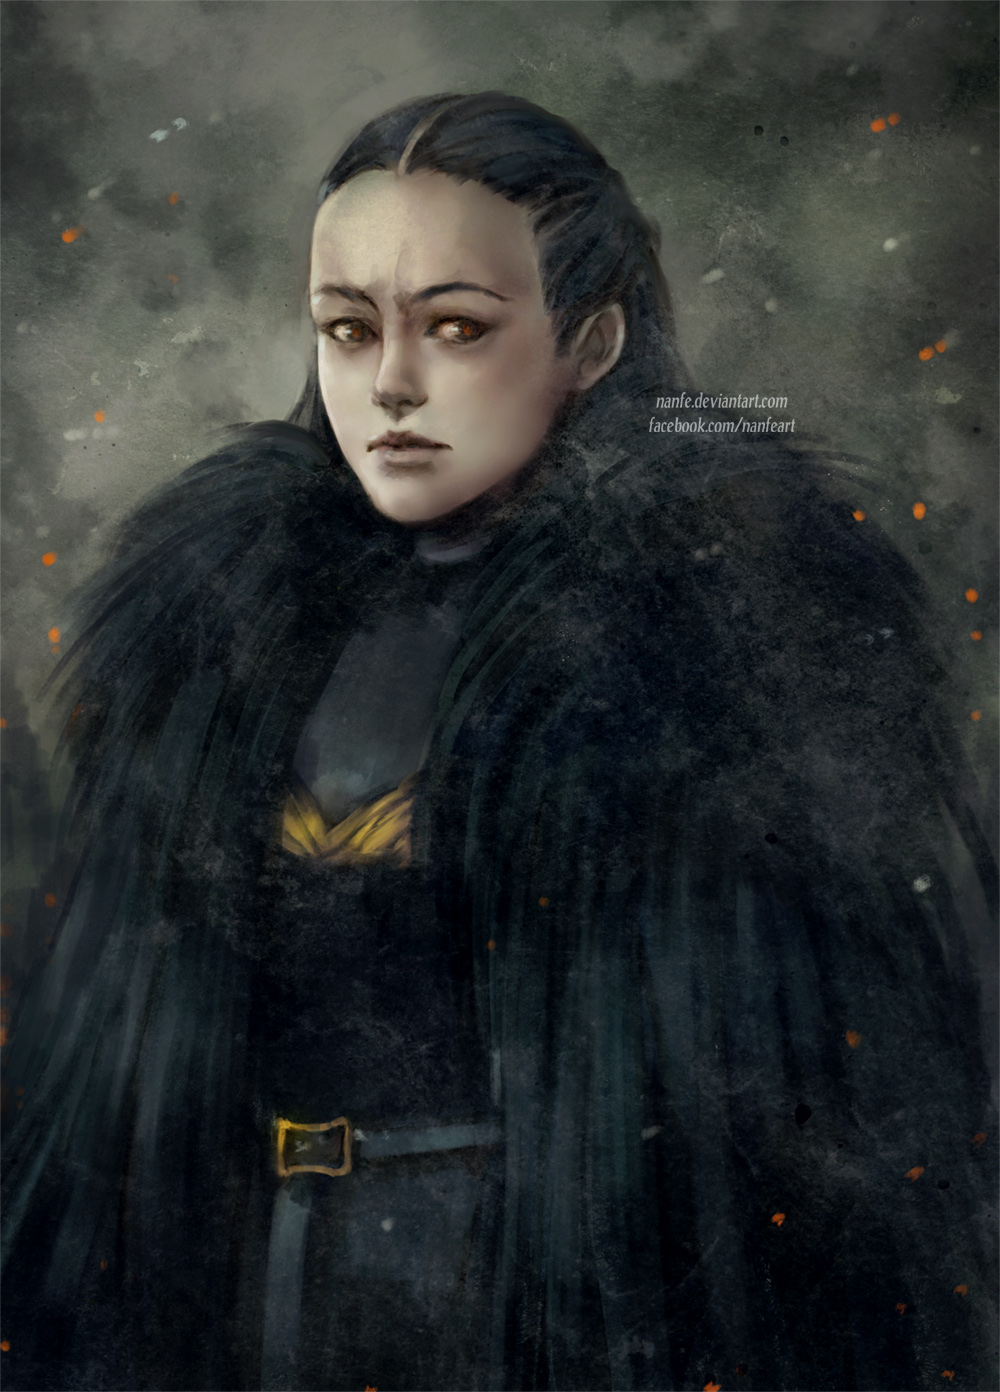 Lyanna Mormont by NanFe on DeviantArt